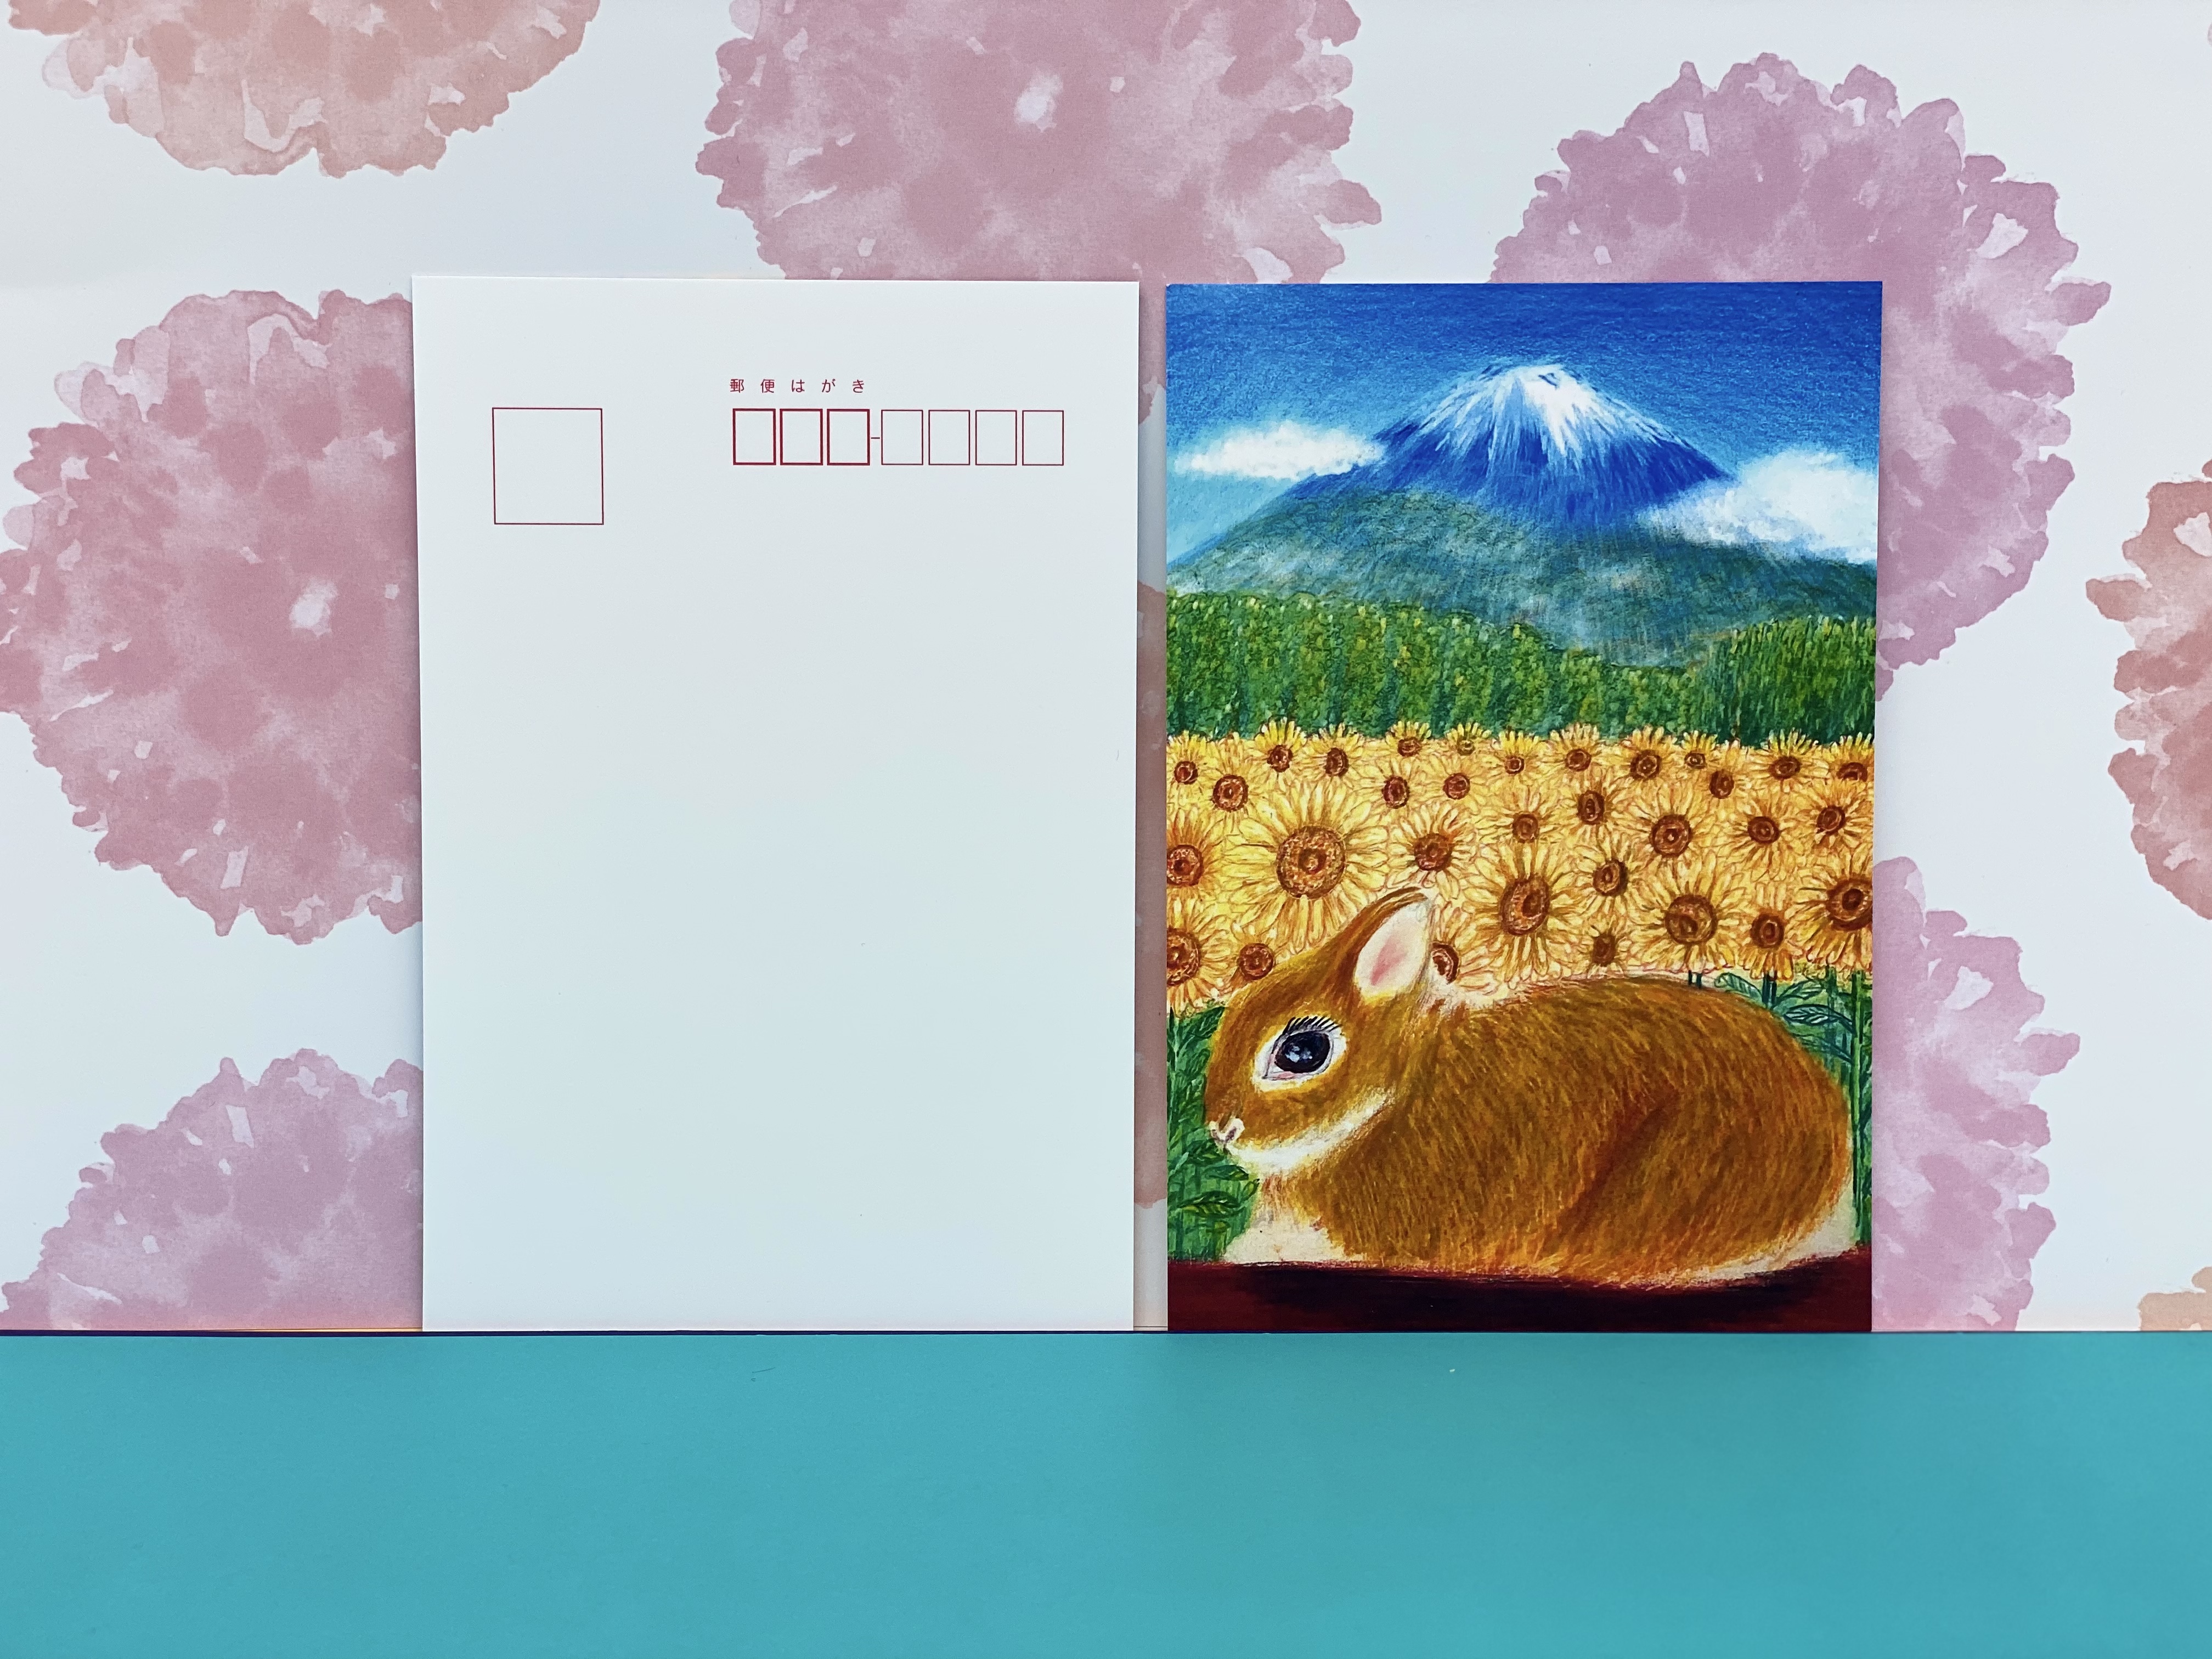 日本一の夏の富士山とひまわり畑とうさぎちゃん 同柄ポストカード3枚セット 富士山 ひまわり 夏 Iichi ハンドメイド クラフト作品 手仕事品の通販